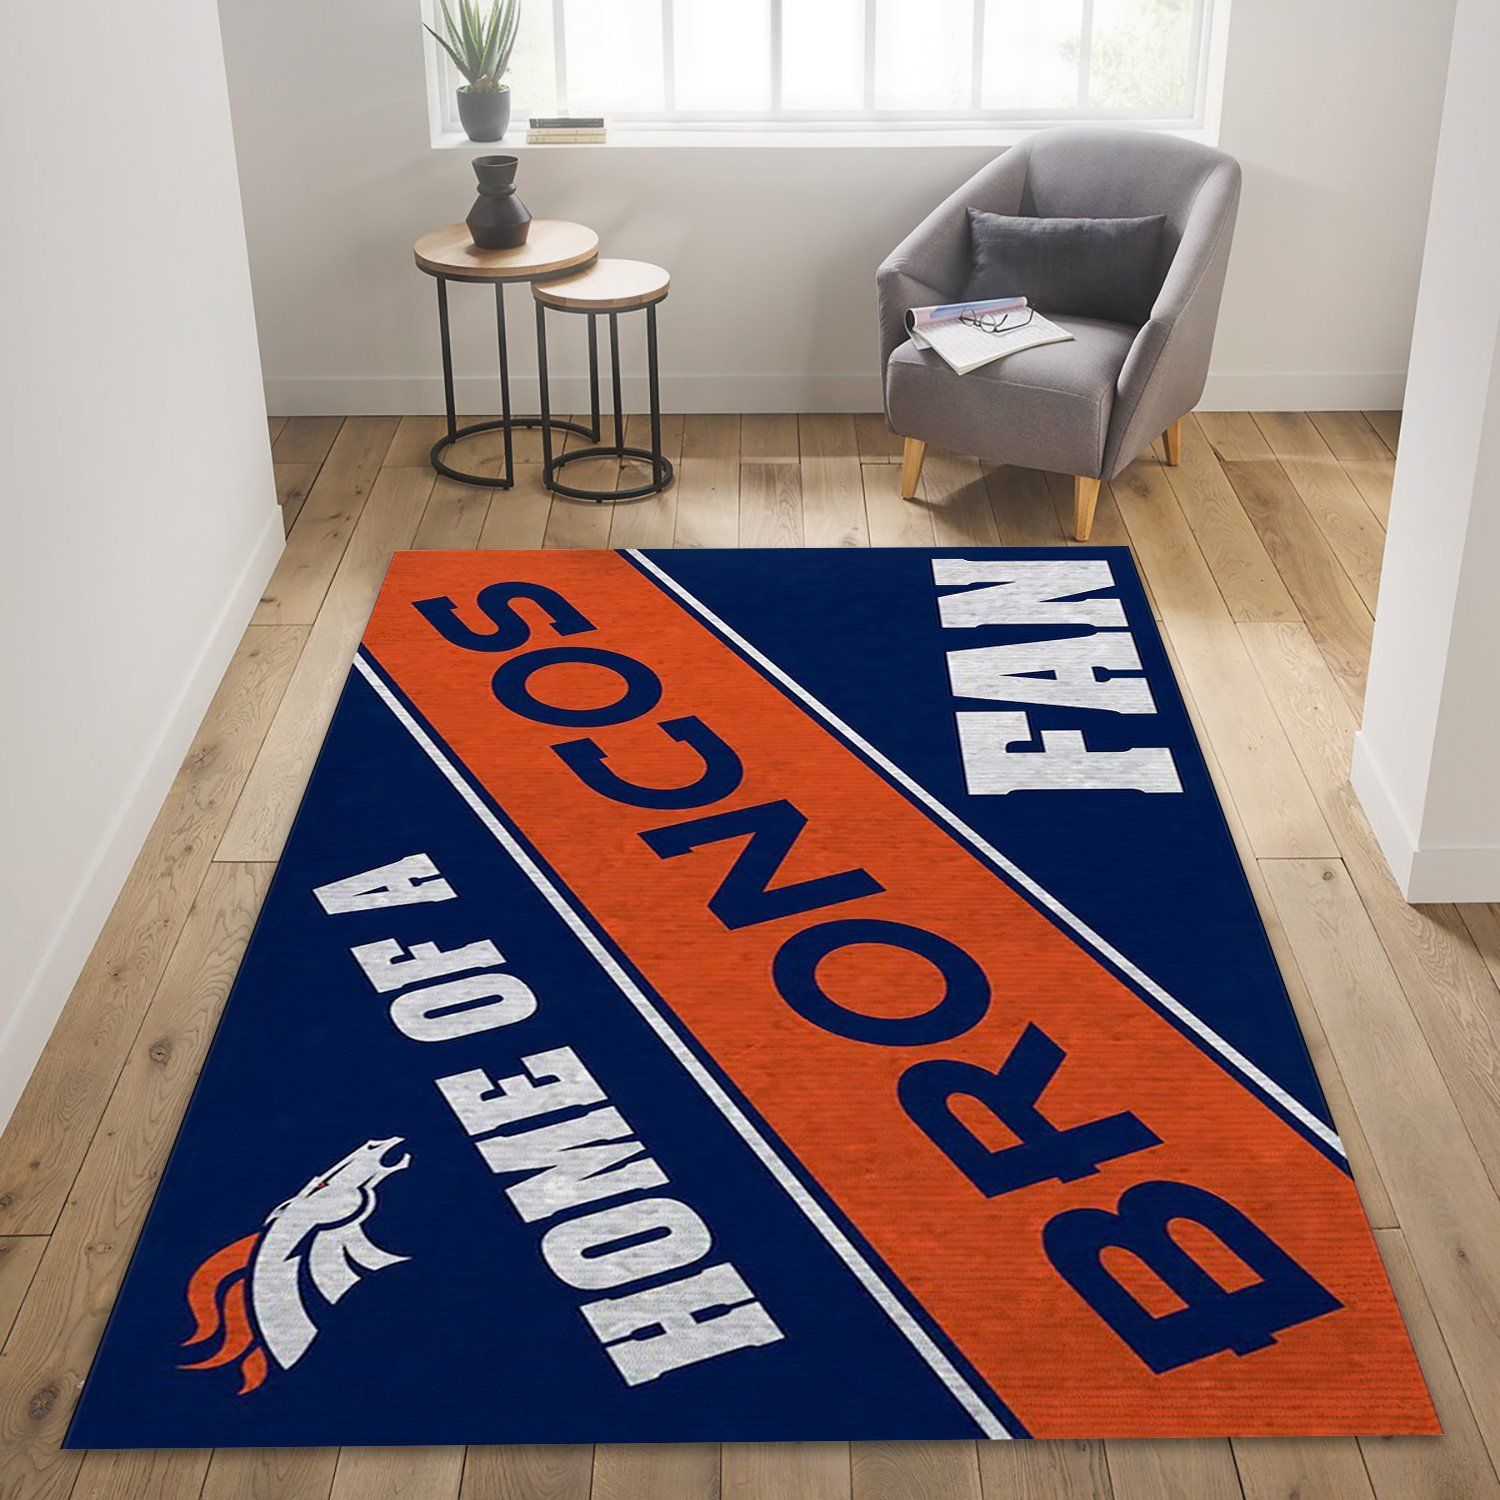 Denver Broncos Team Nfl Floor home decoration carpet rug for football fans